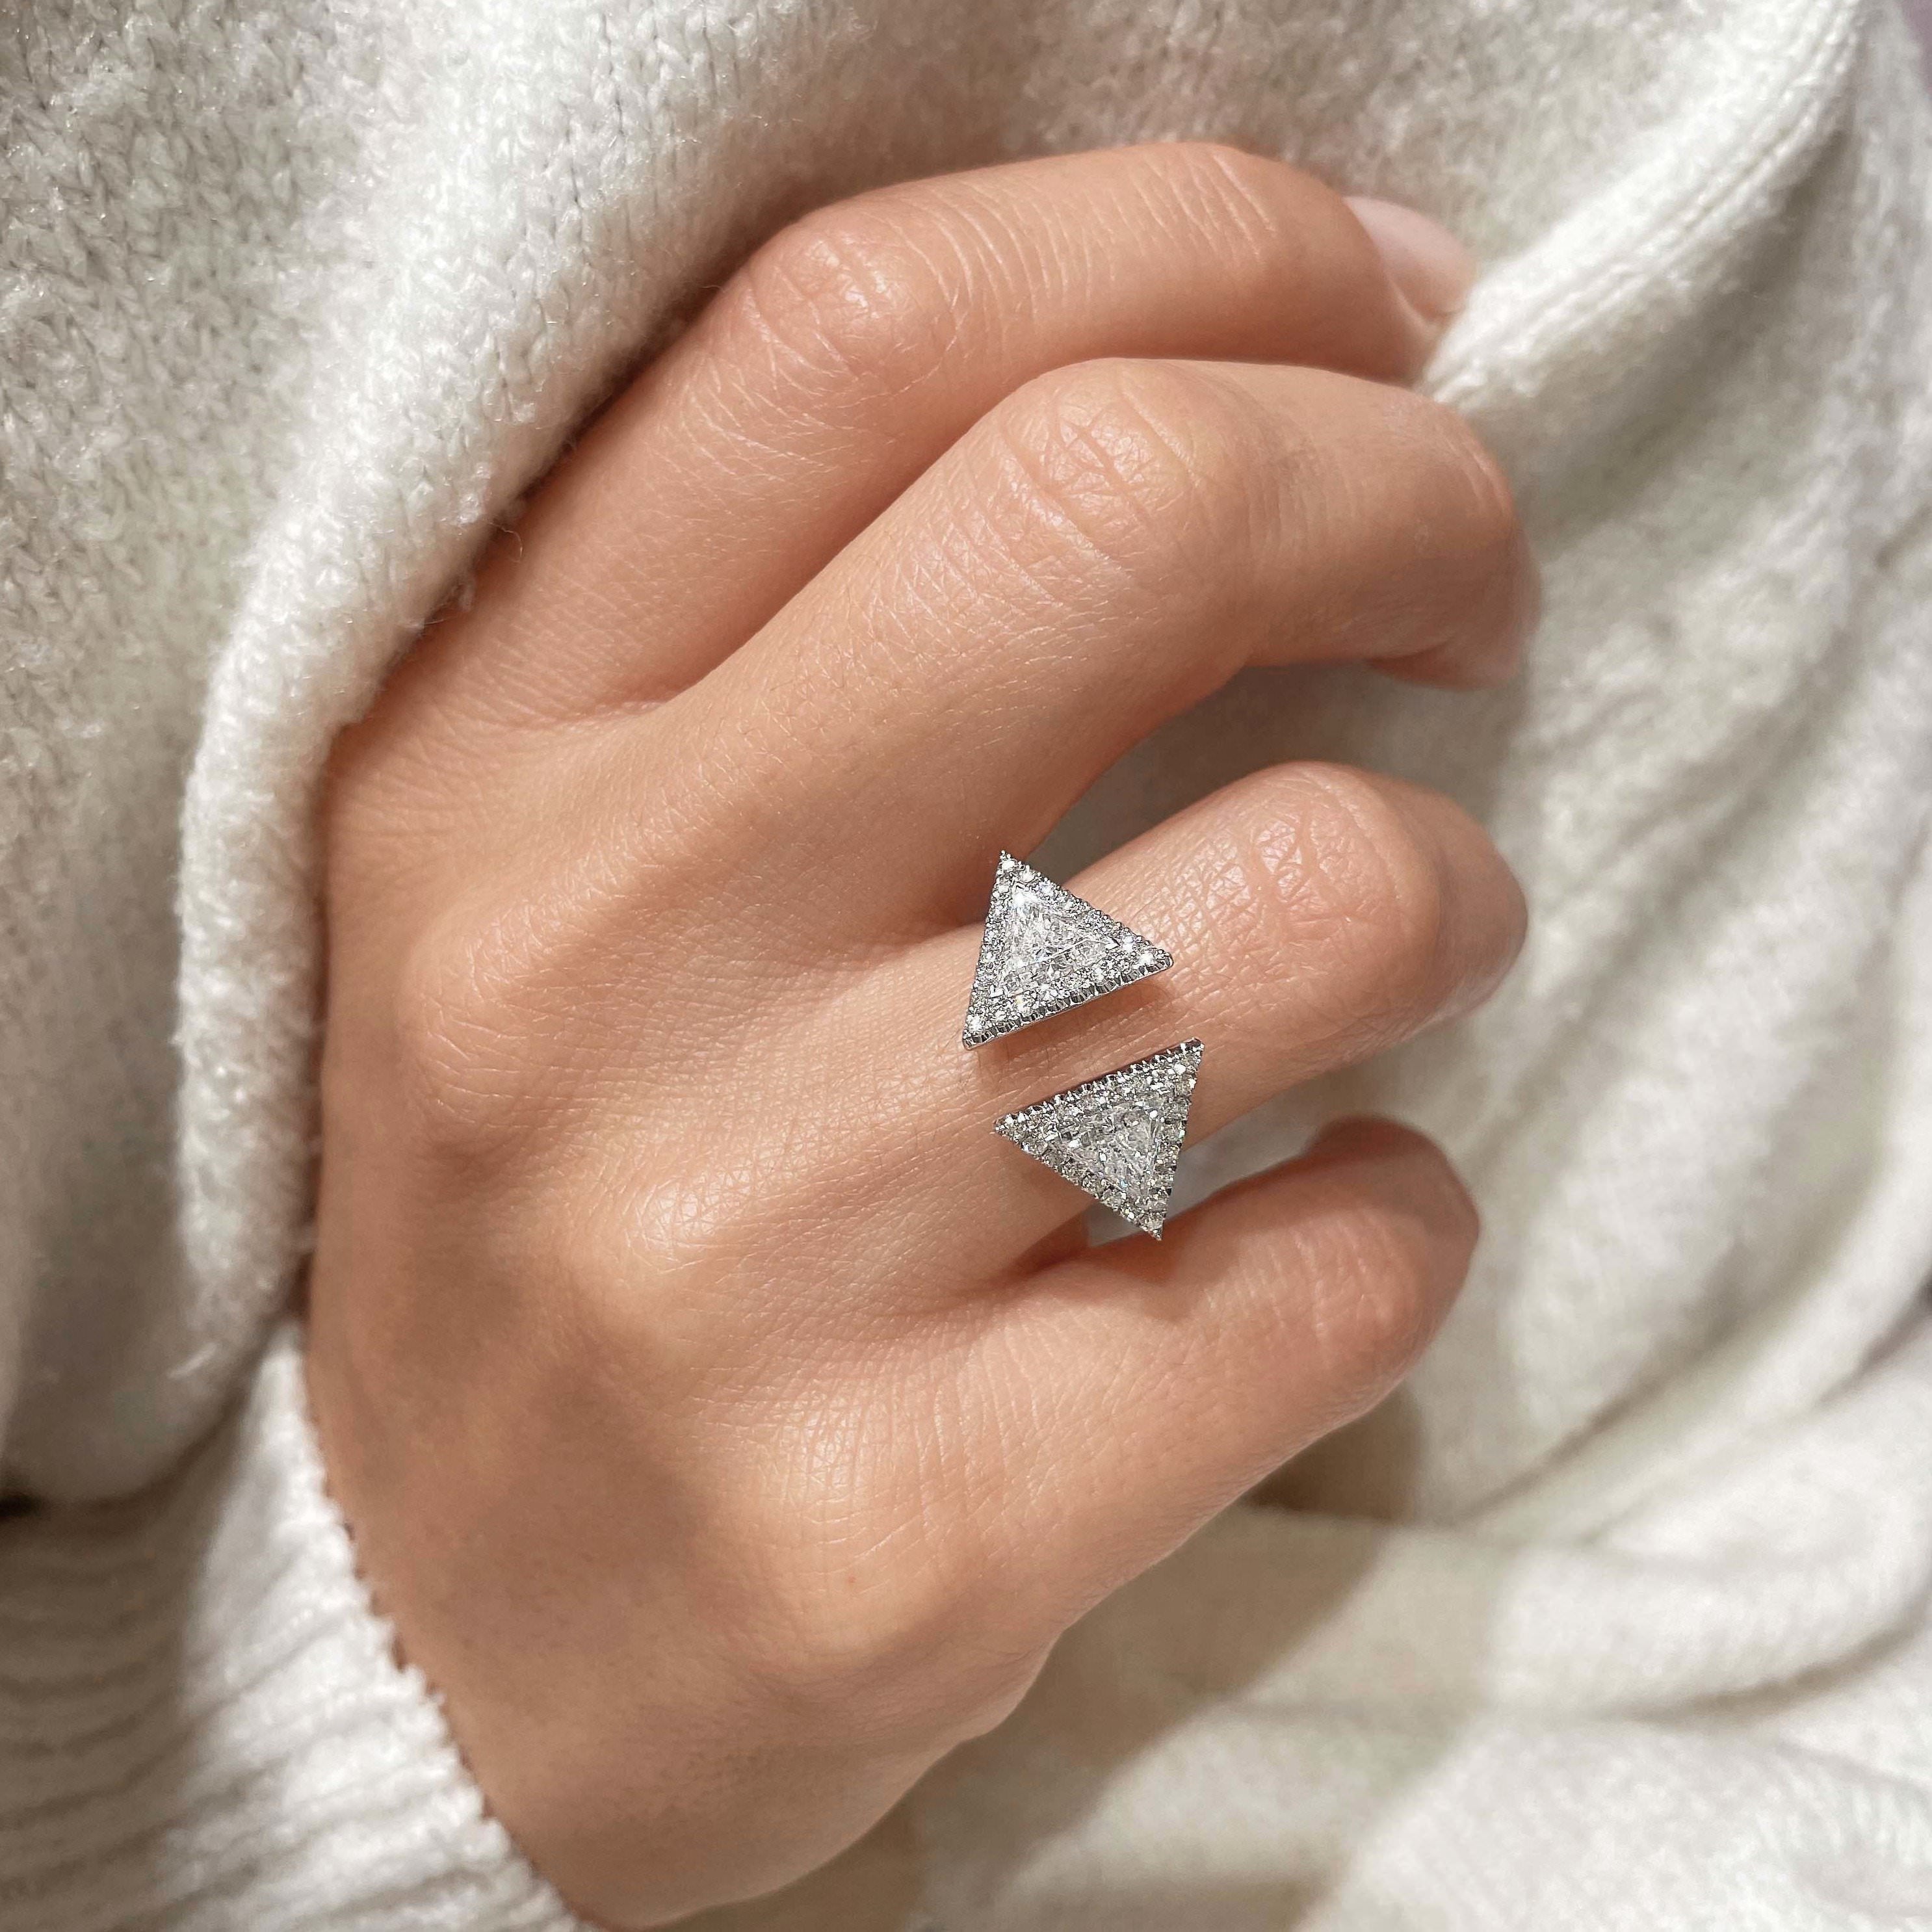 Jade Lab Grown Diamond Wedding Ring   (1.5 carat) -18K White Gold